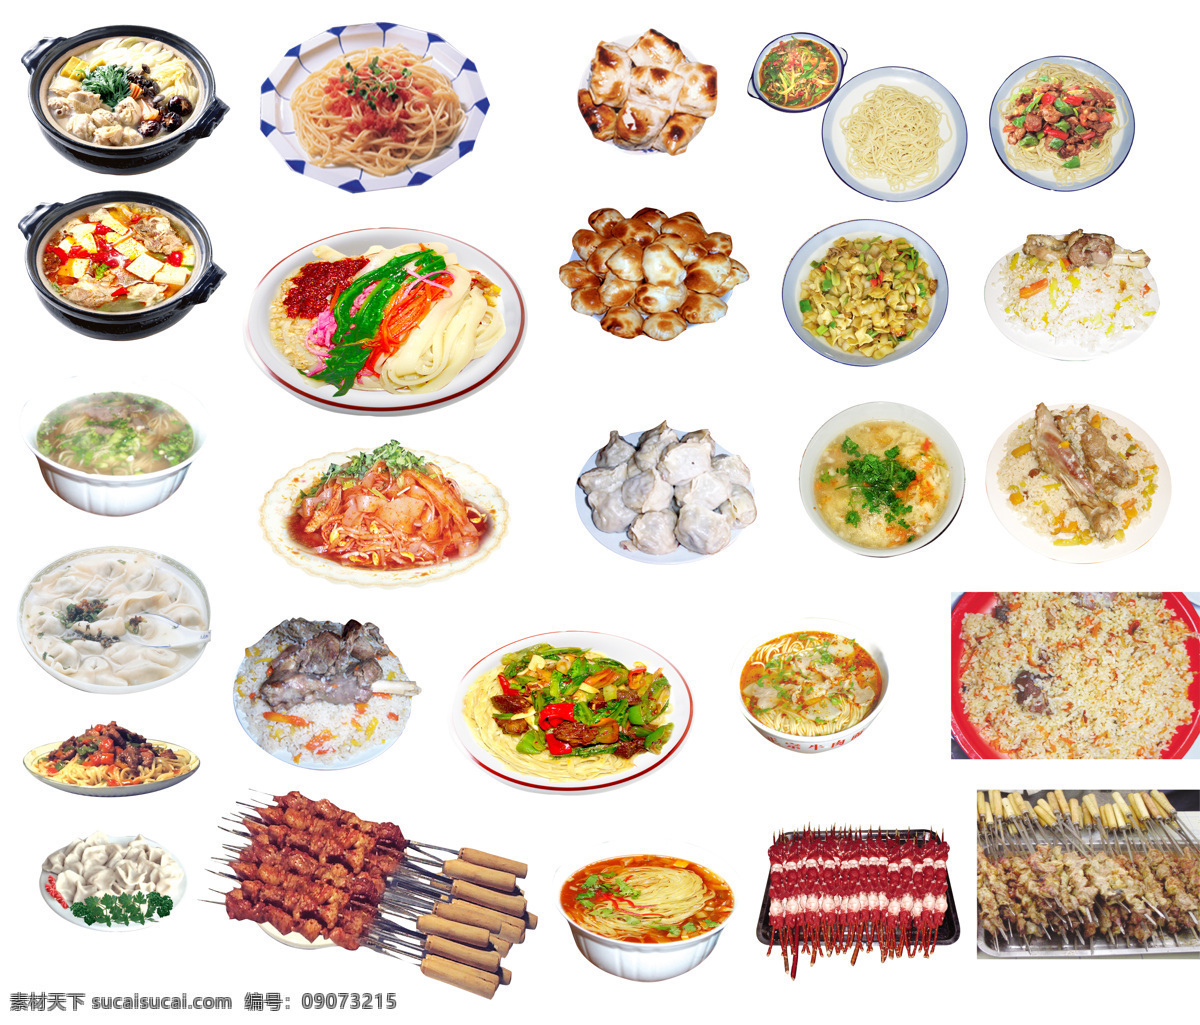 食物 美食 烤肉 凉皮 凉面 烤包子 抓饭 汤饭 牛肉面 新疆美食 新疆食物 餐饮美食 生活百科